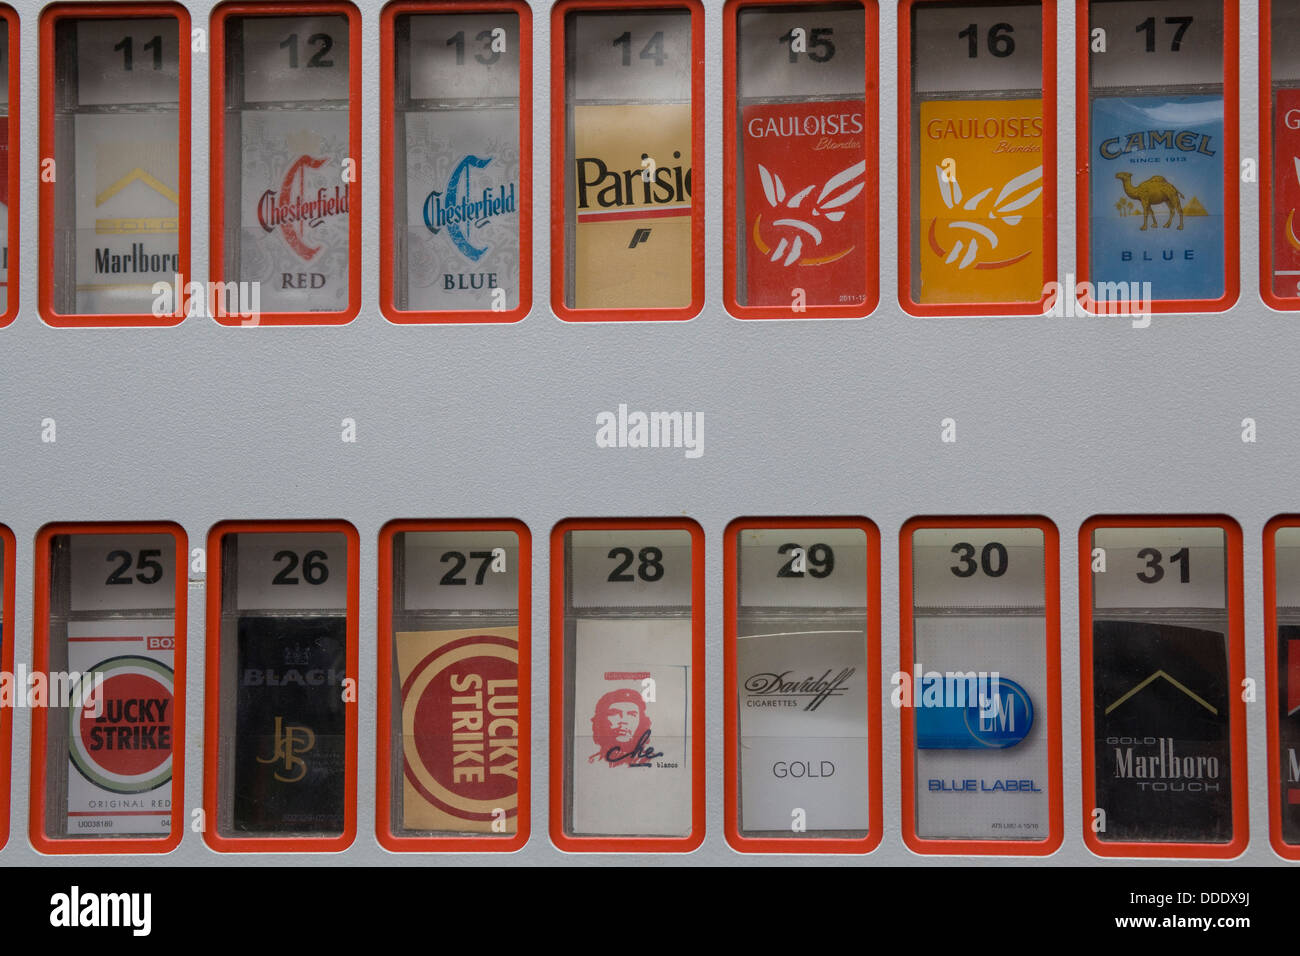 Distributeur automatique de cigarettes dans les rues de Vienne Autriche Banque D'Images